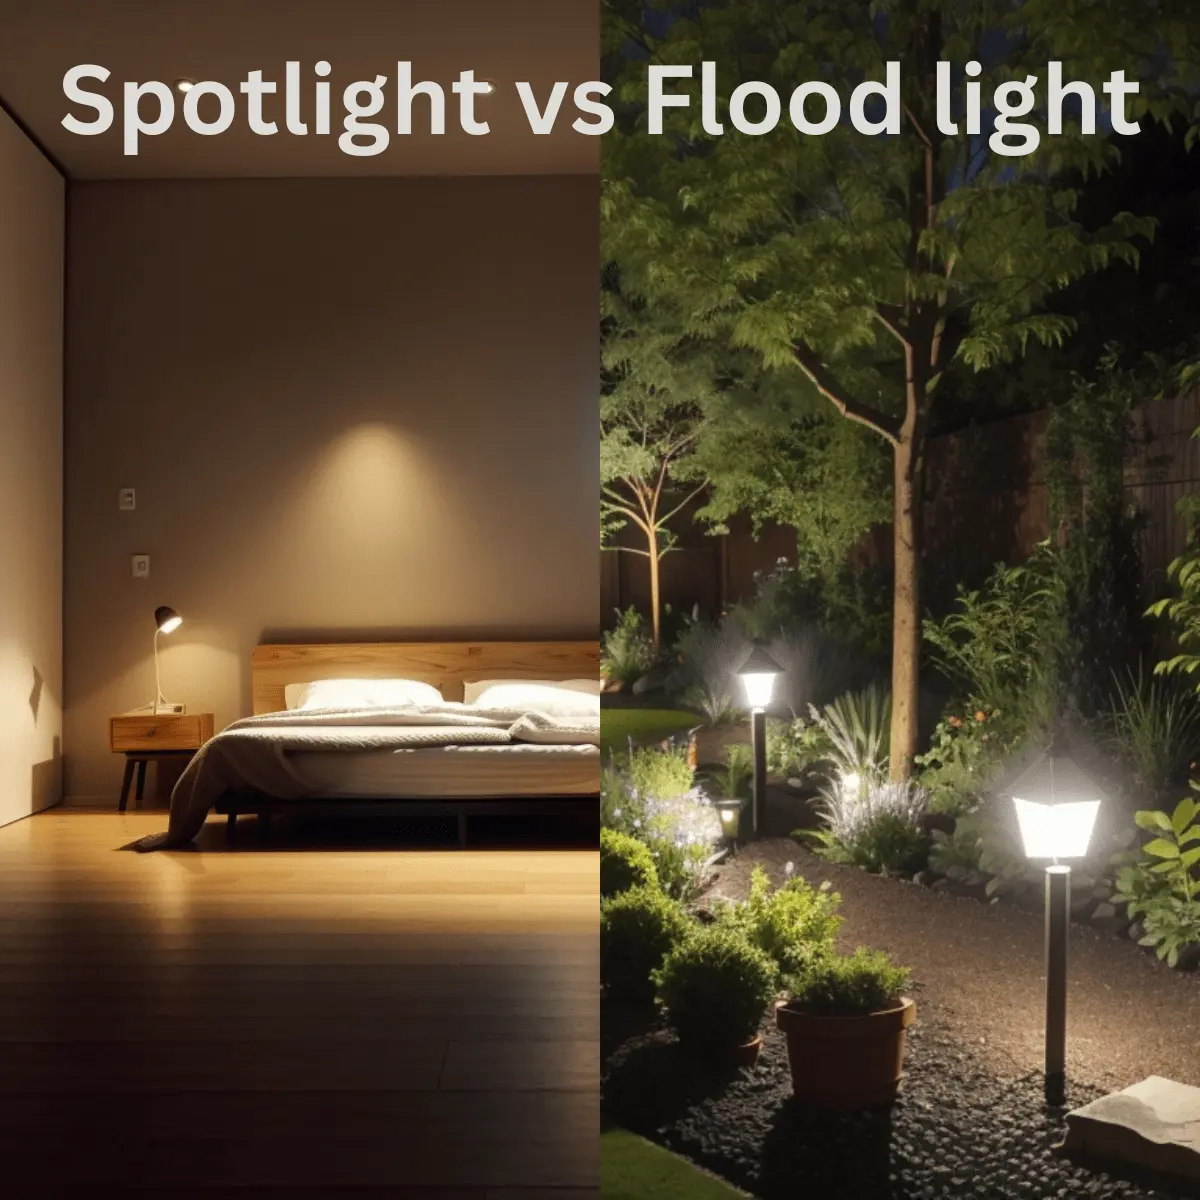 Spotlight vs Flood light